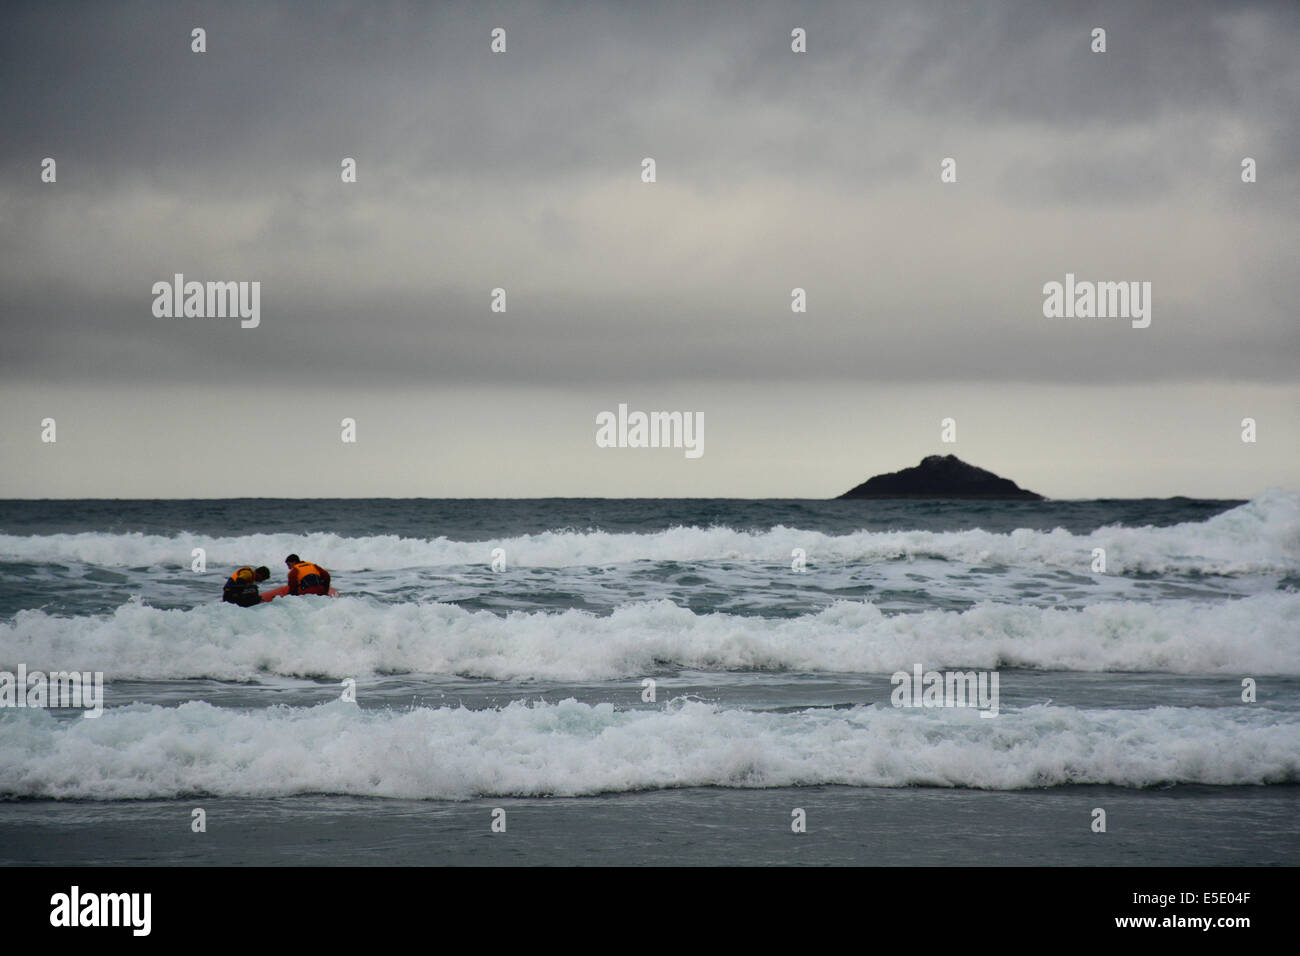 Schlauchboot mit 2 Rettungsschwimmern scouting der Küste während Dunedin der jährlichen Midwinter Polar Plunge im St Clair Esplanade statt Stockfoto